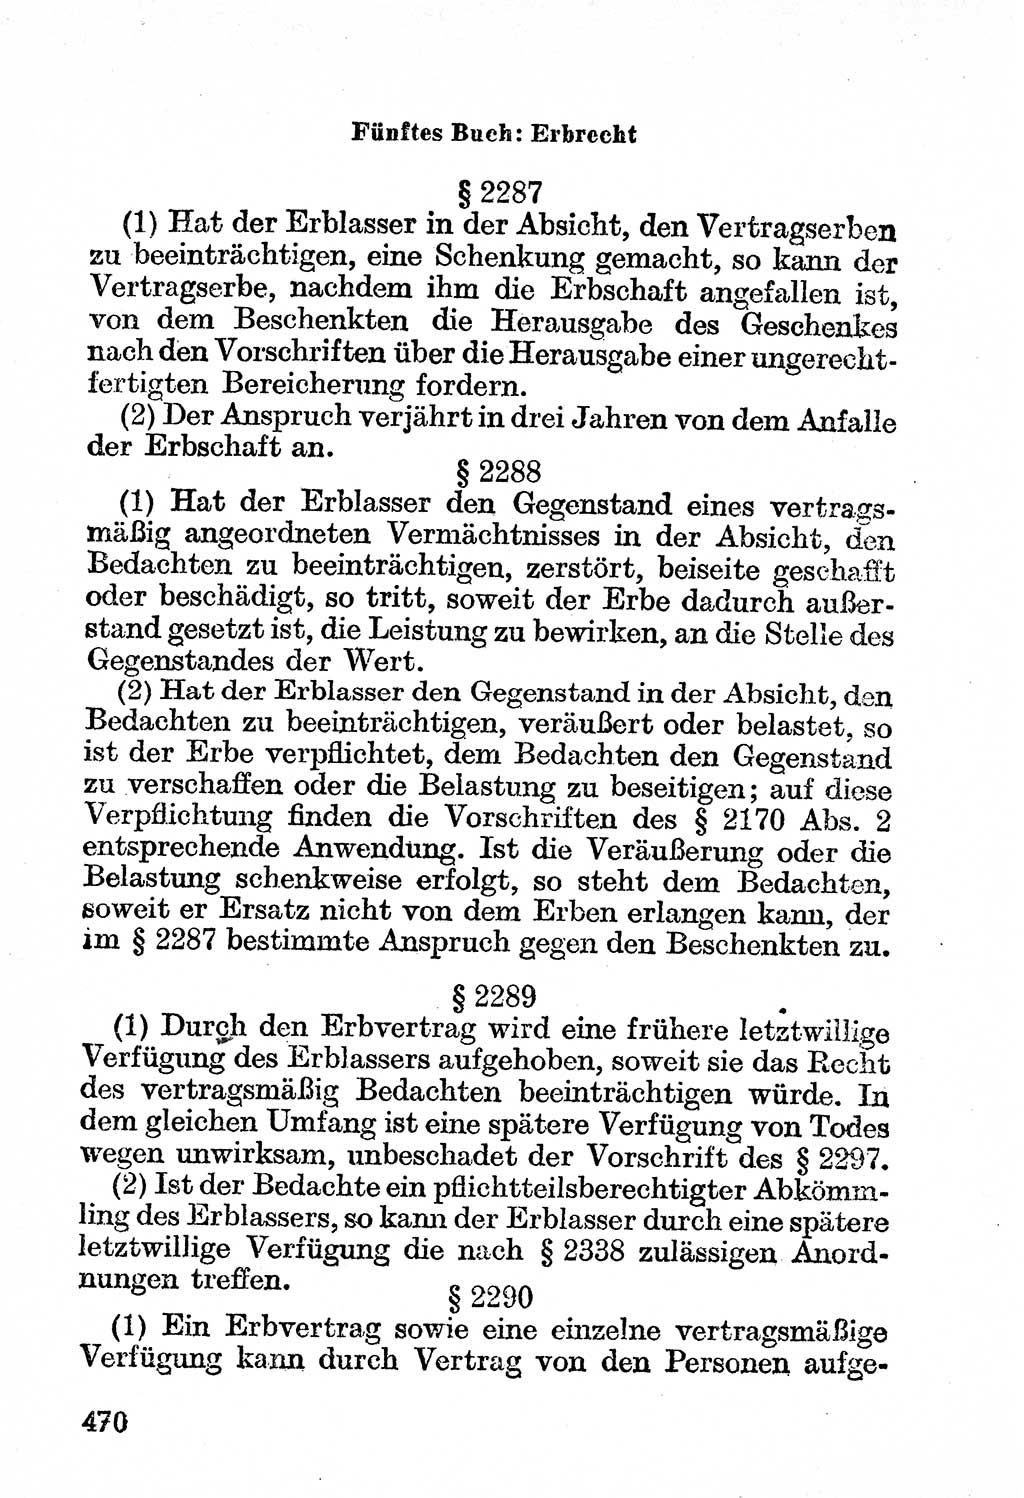 Bürgerliches Gesetzbuch (BGB) nebst wichtigen Nebengesetzen [Deutsche Demokratische Republik (DDR)] 1956, Seite 470 (BGB Nebenges. DDR 1956, S. 470)